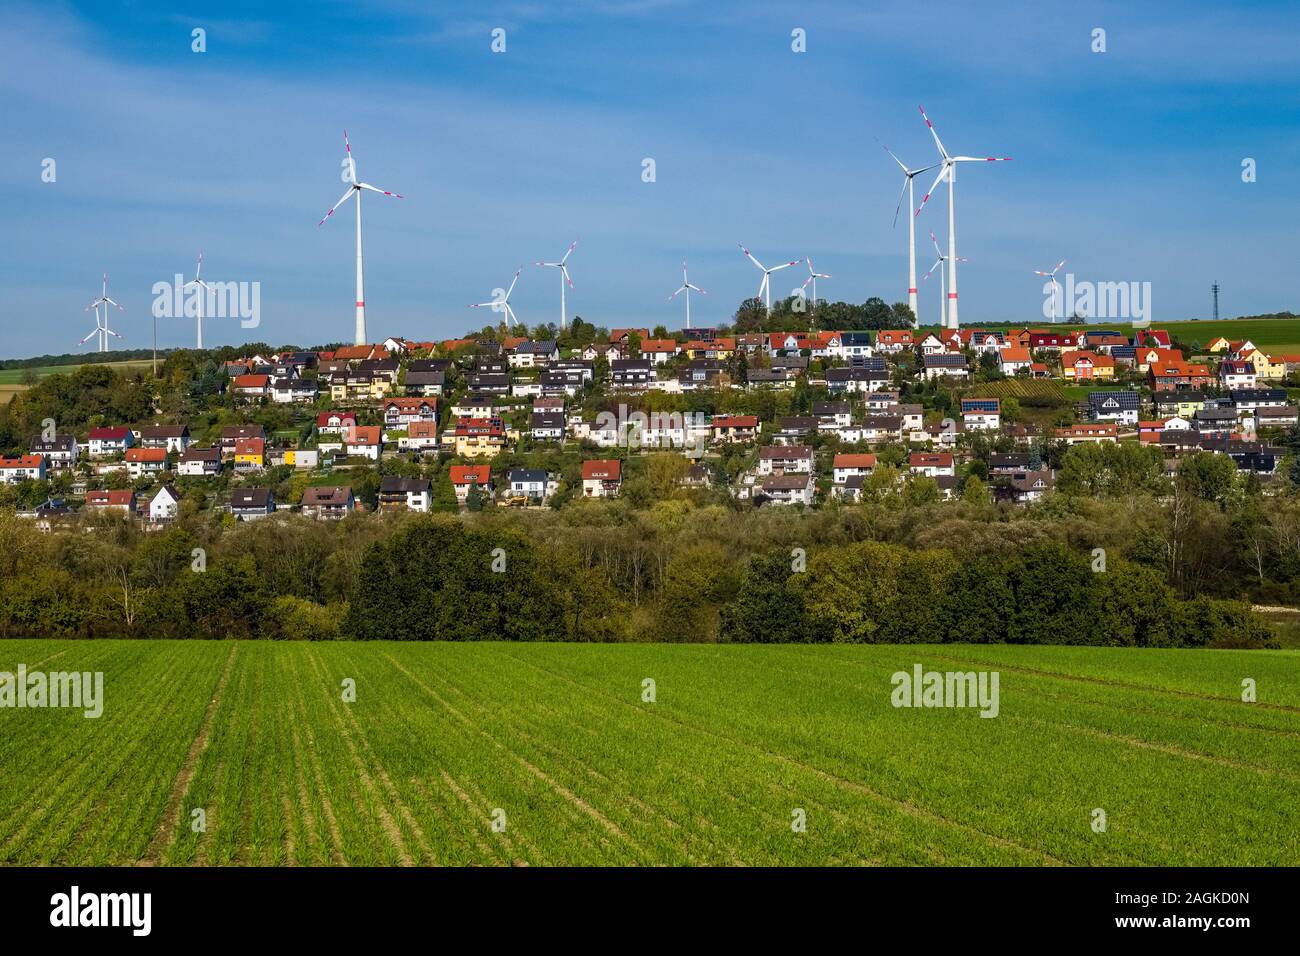 Impianti di energia eolica dietro un agricola utilizzata sul campo e il villaggio, situato tra i campi sul pendio di una collina Foto Stock